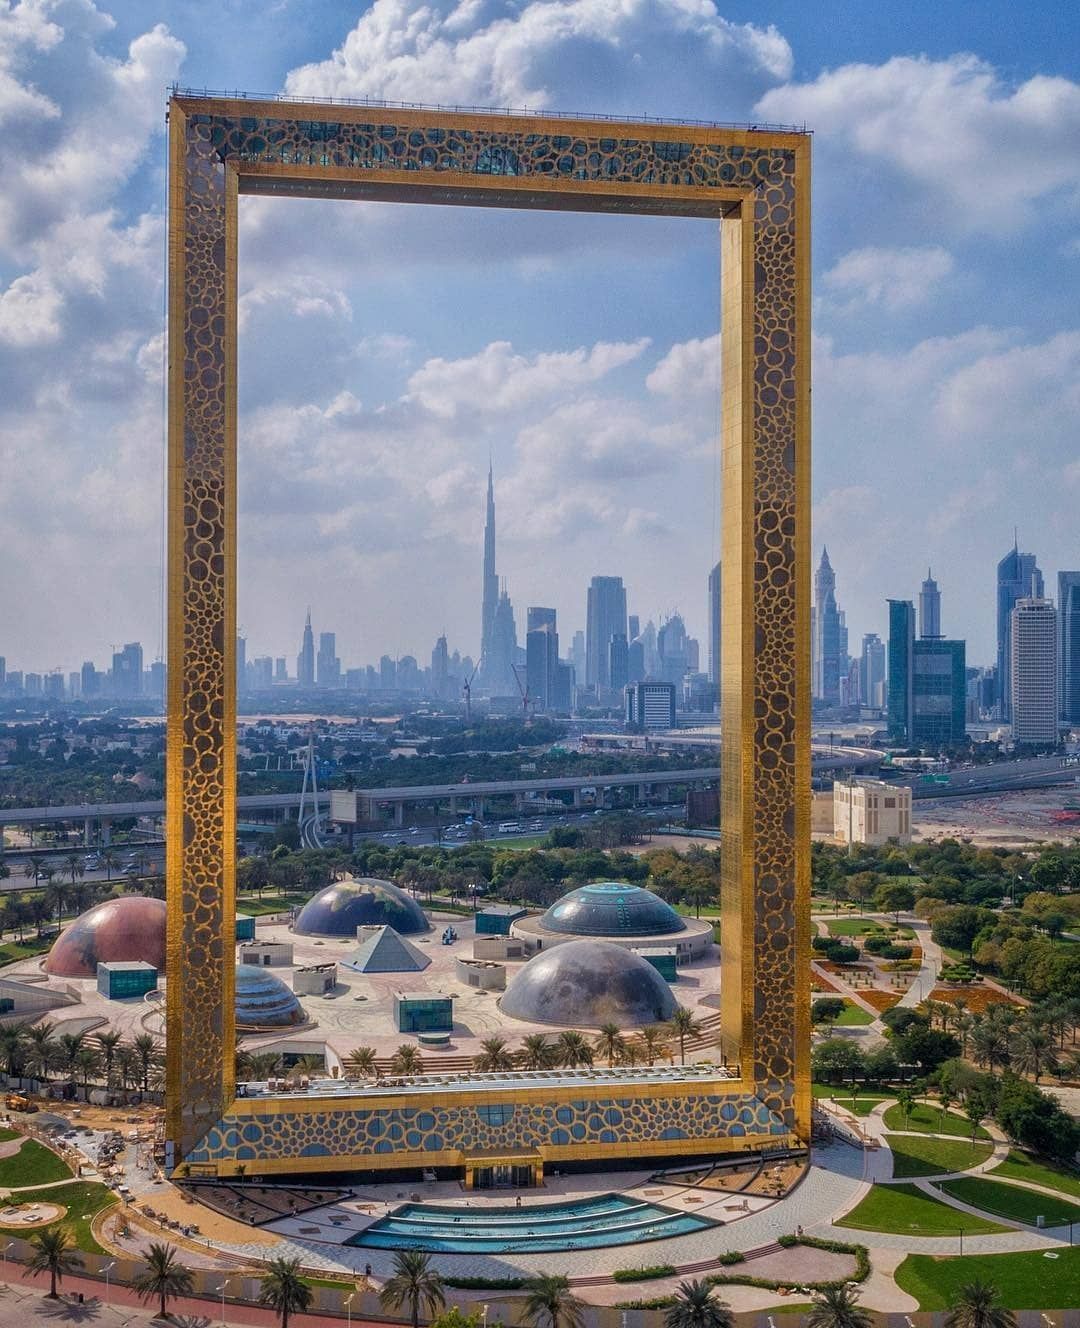 New top tourist spots in Dubai 2020 - New top tourist spots in Dubai 2022